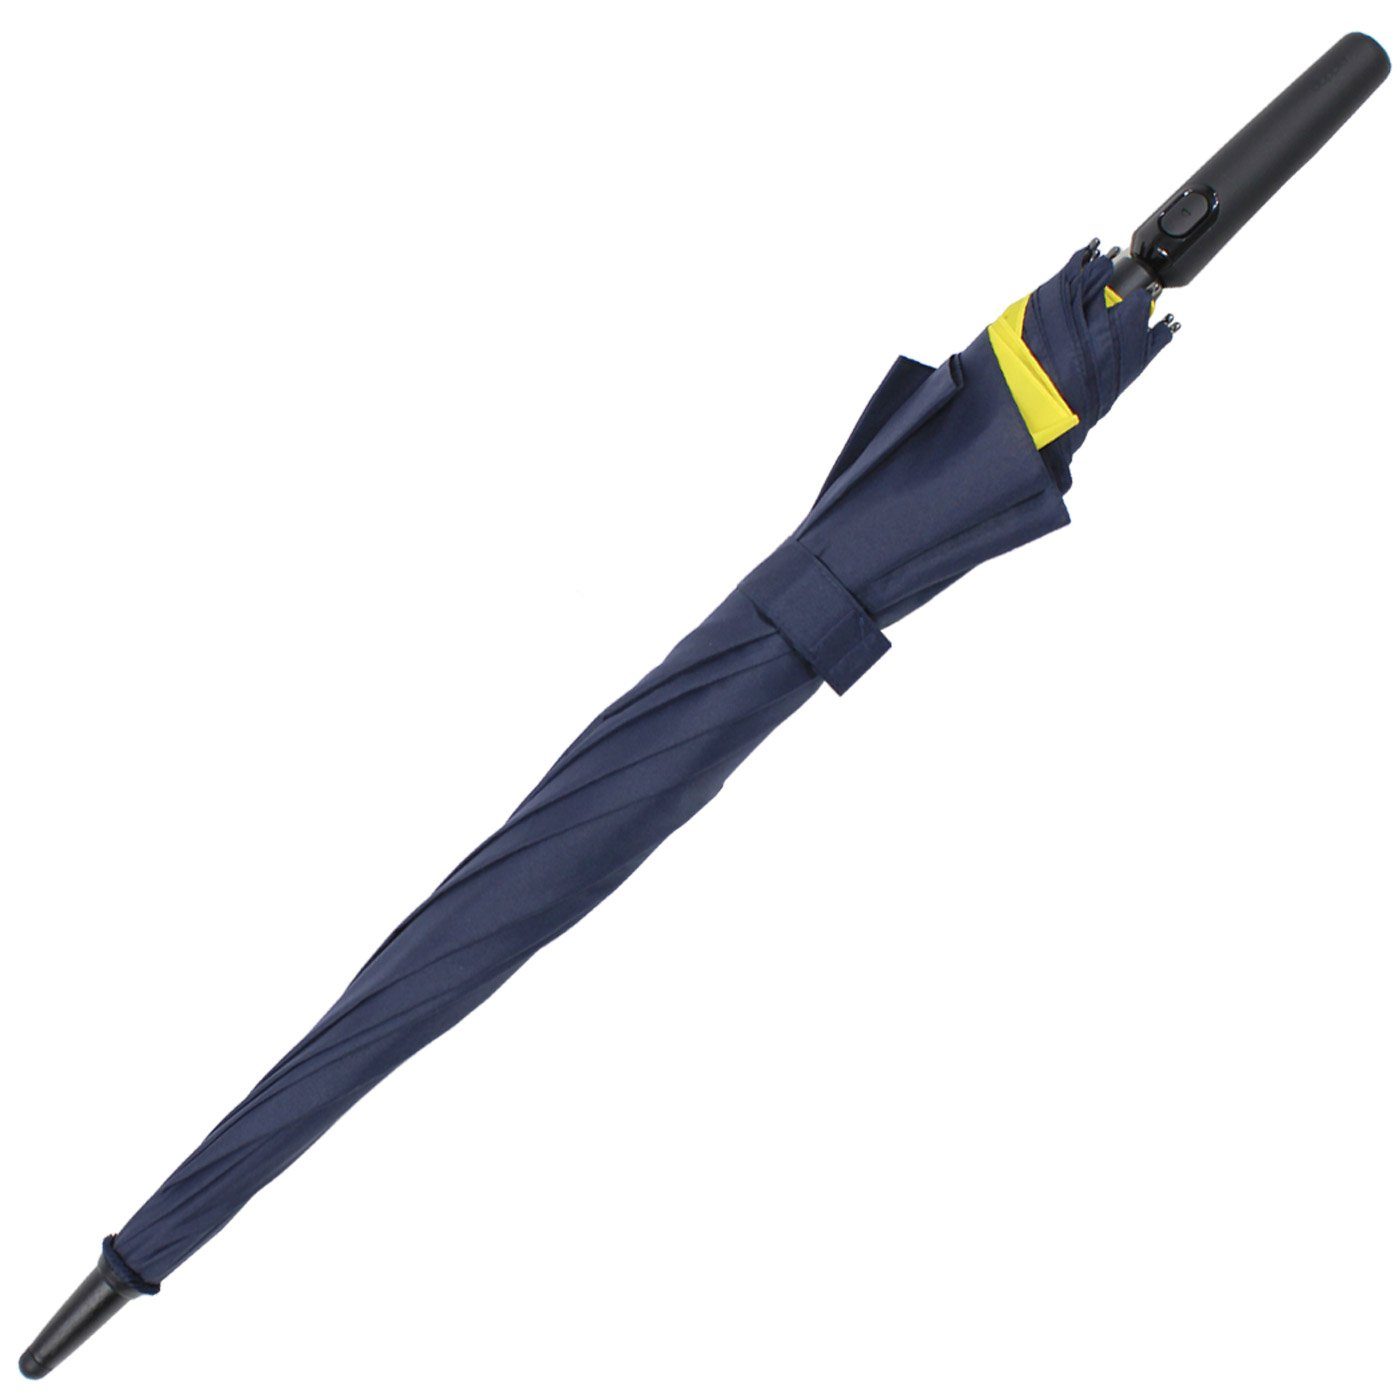 für doppler® to Move XL, vor navyblau-gelb Langregenschirm beim Öffnen Auf-Automatik Fiberglas Schutz vergrößert - mehr sich mit Regen